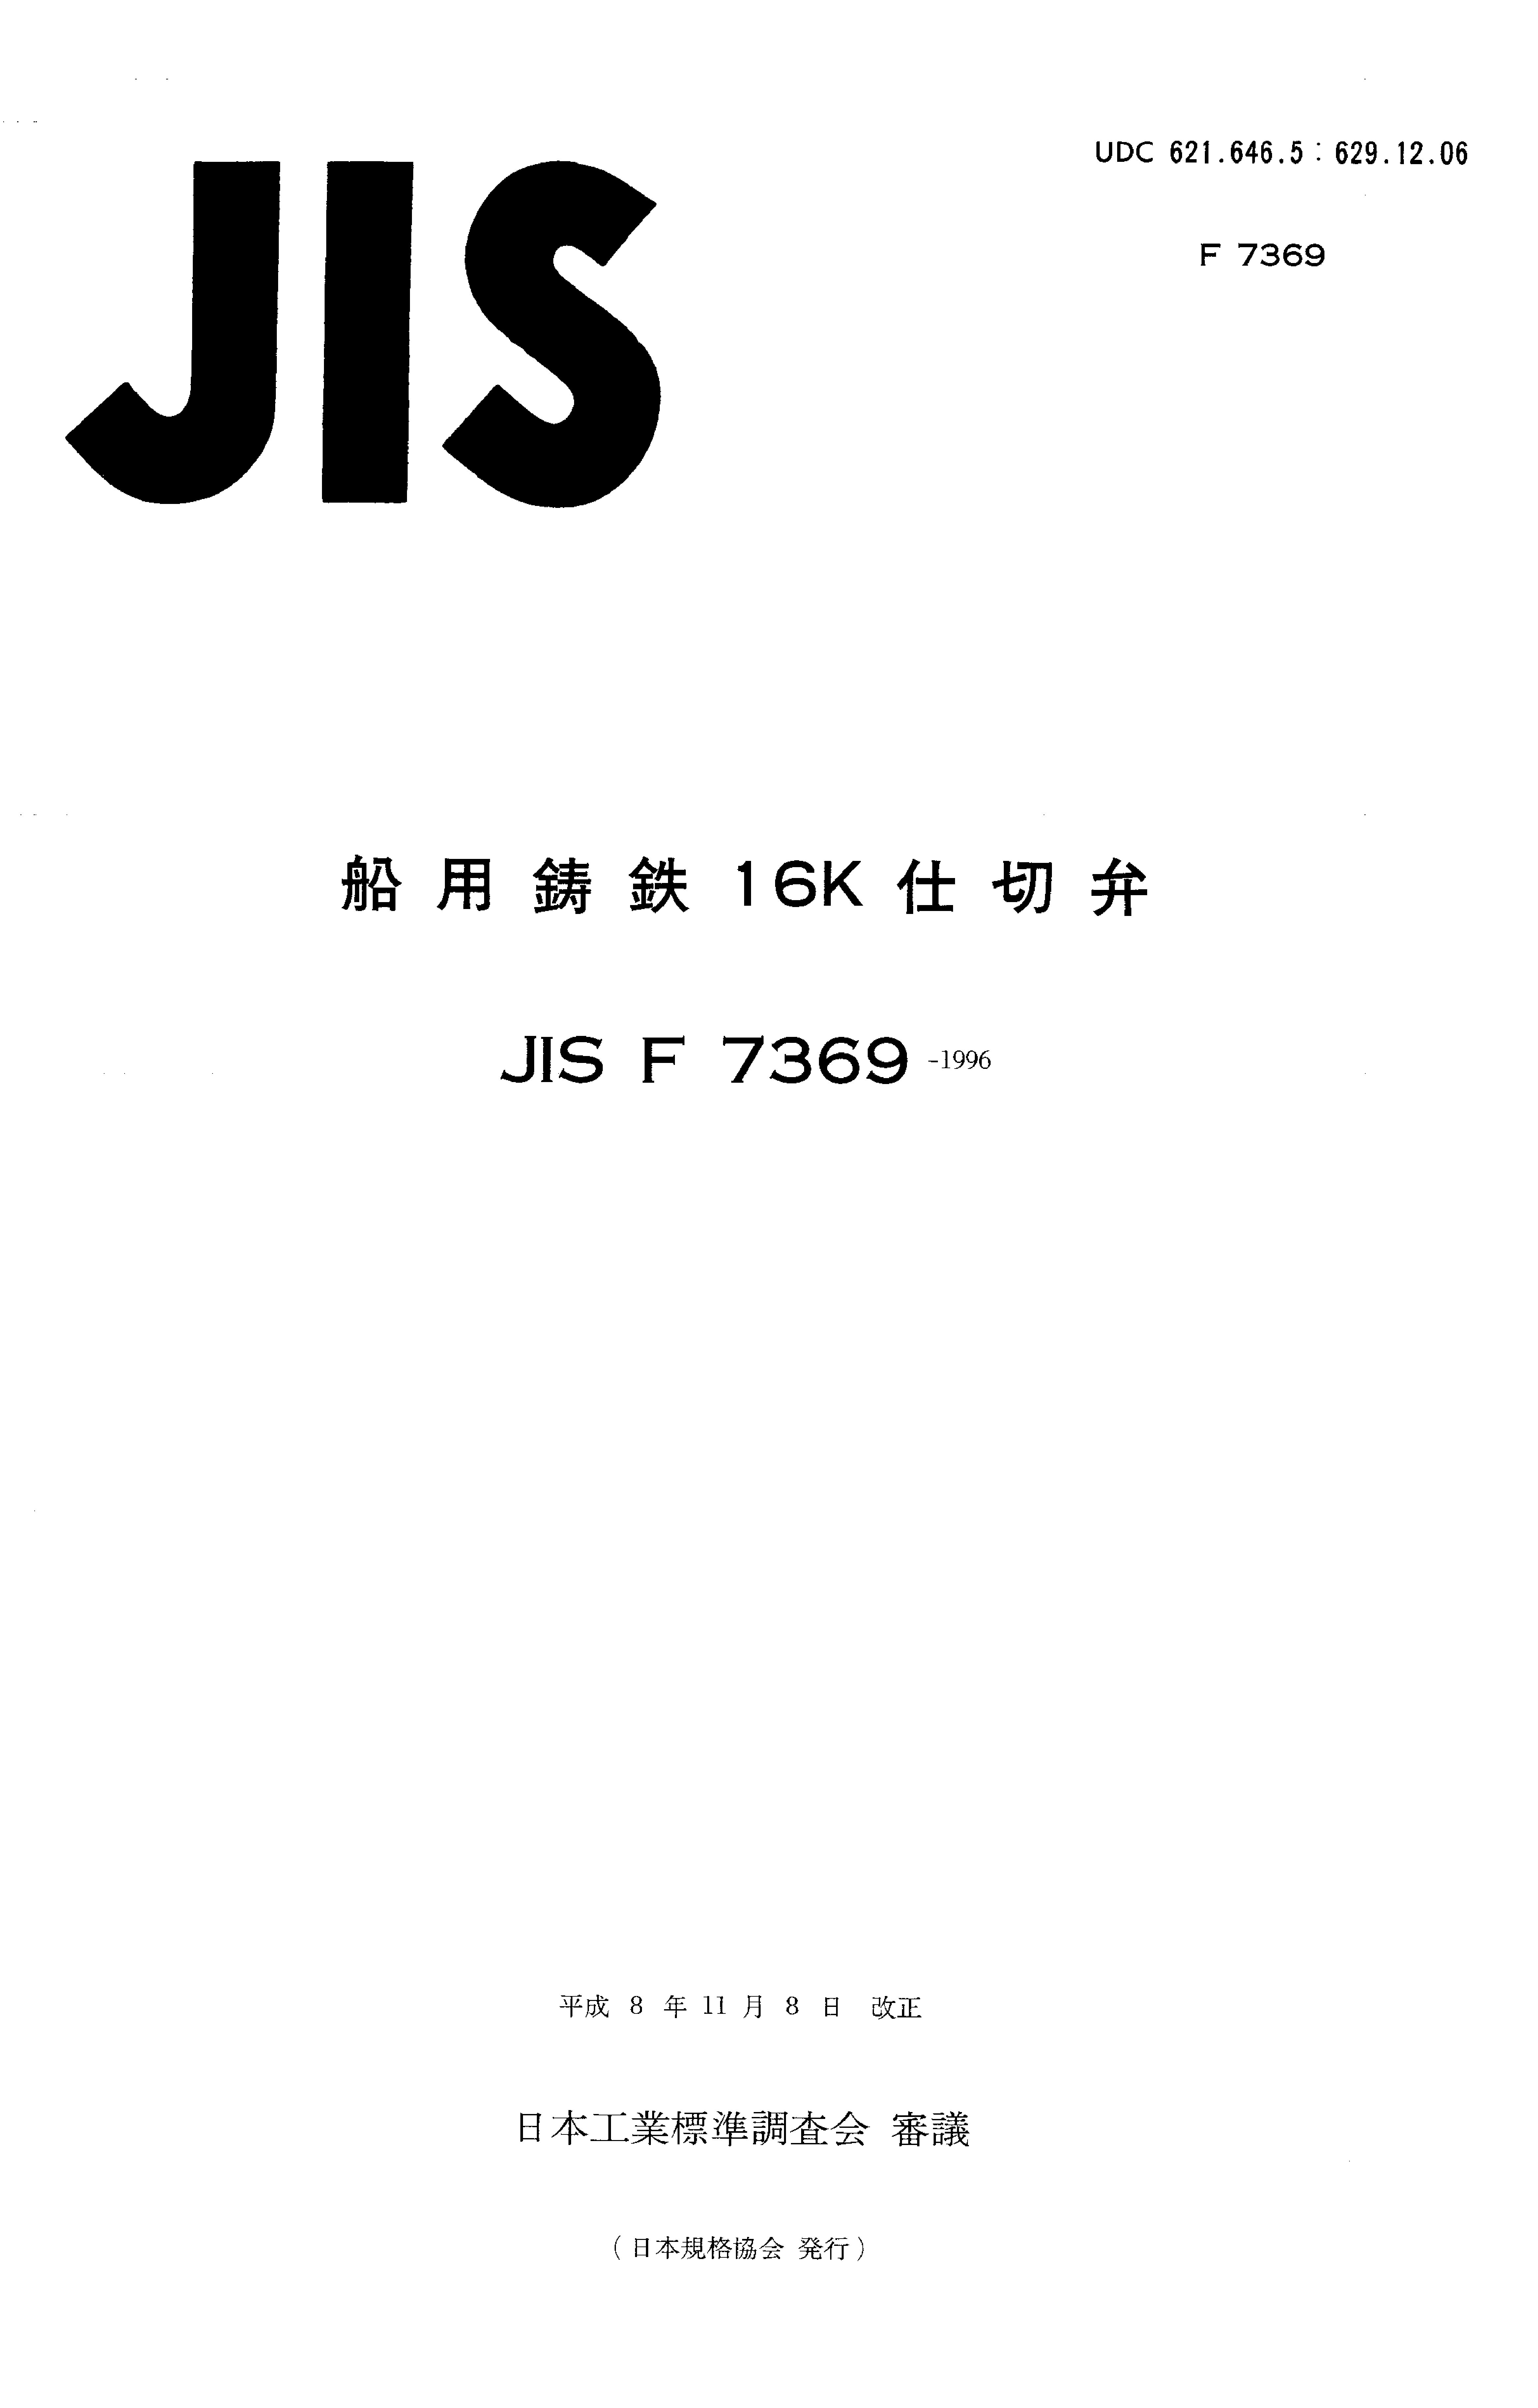 JIS F 7369:1996封面图